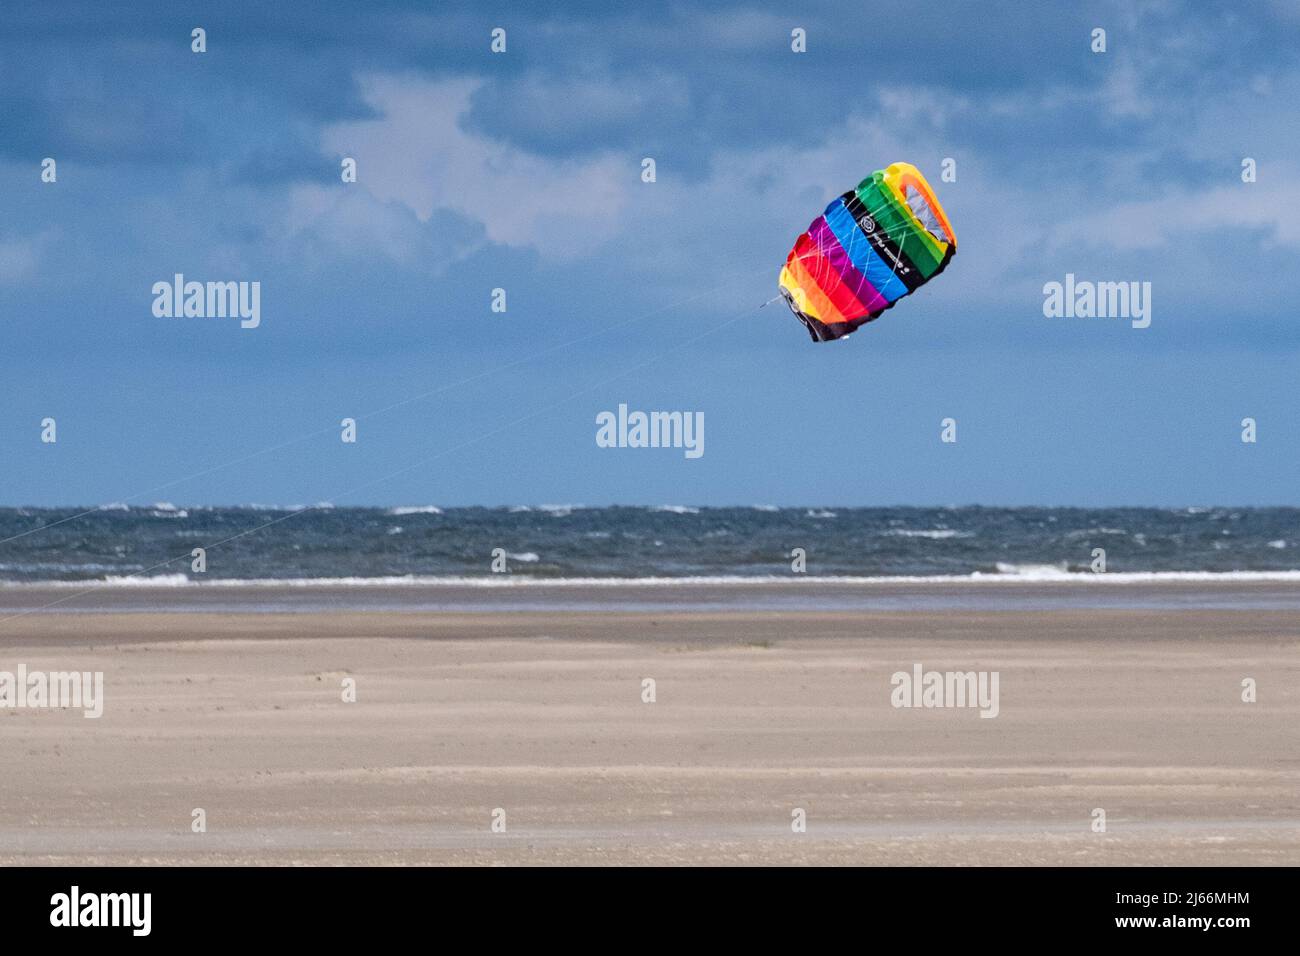 Impressionen von der Insel Borkum - Lenkdrachen / stunt kite Foto Stock